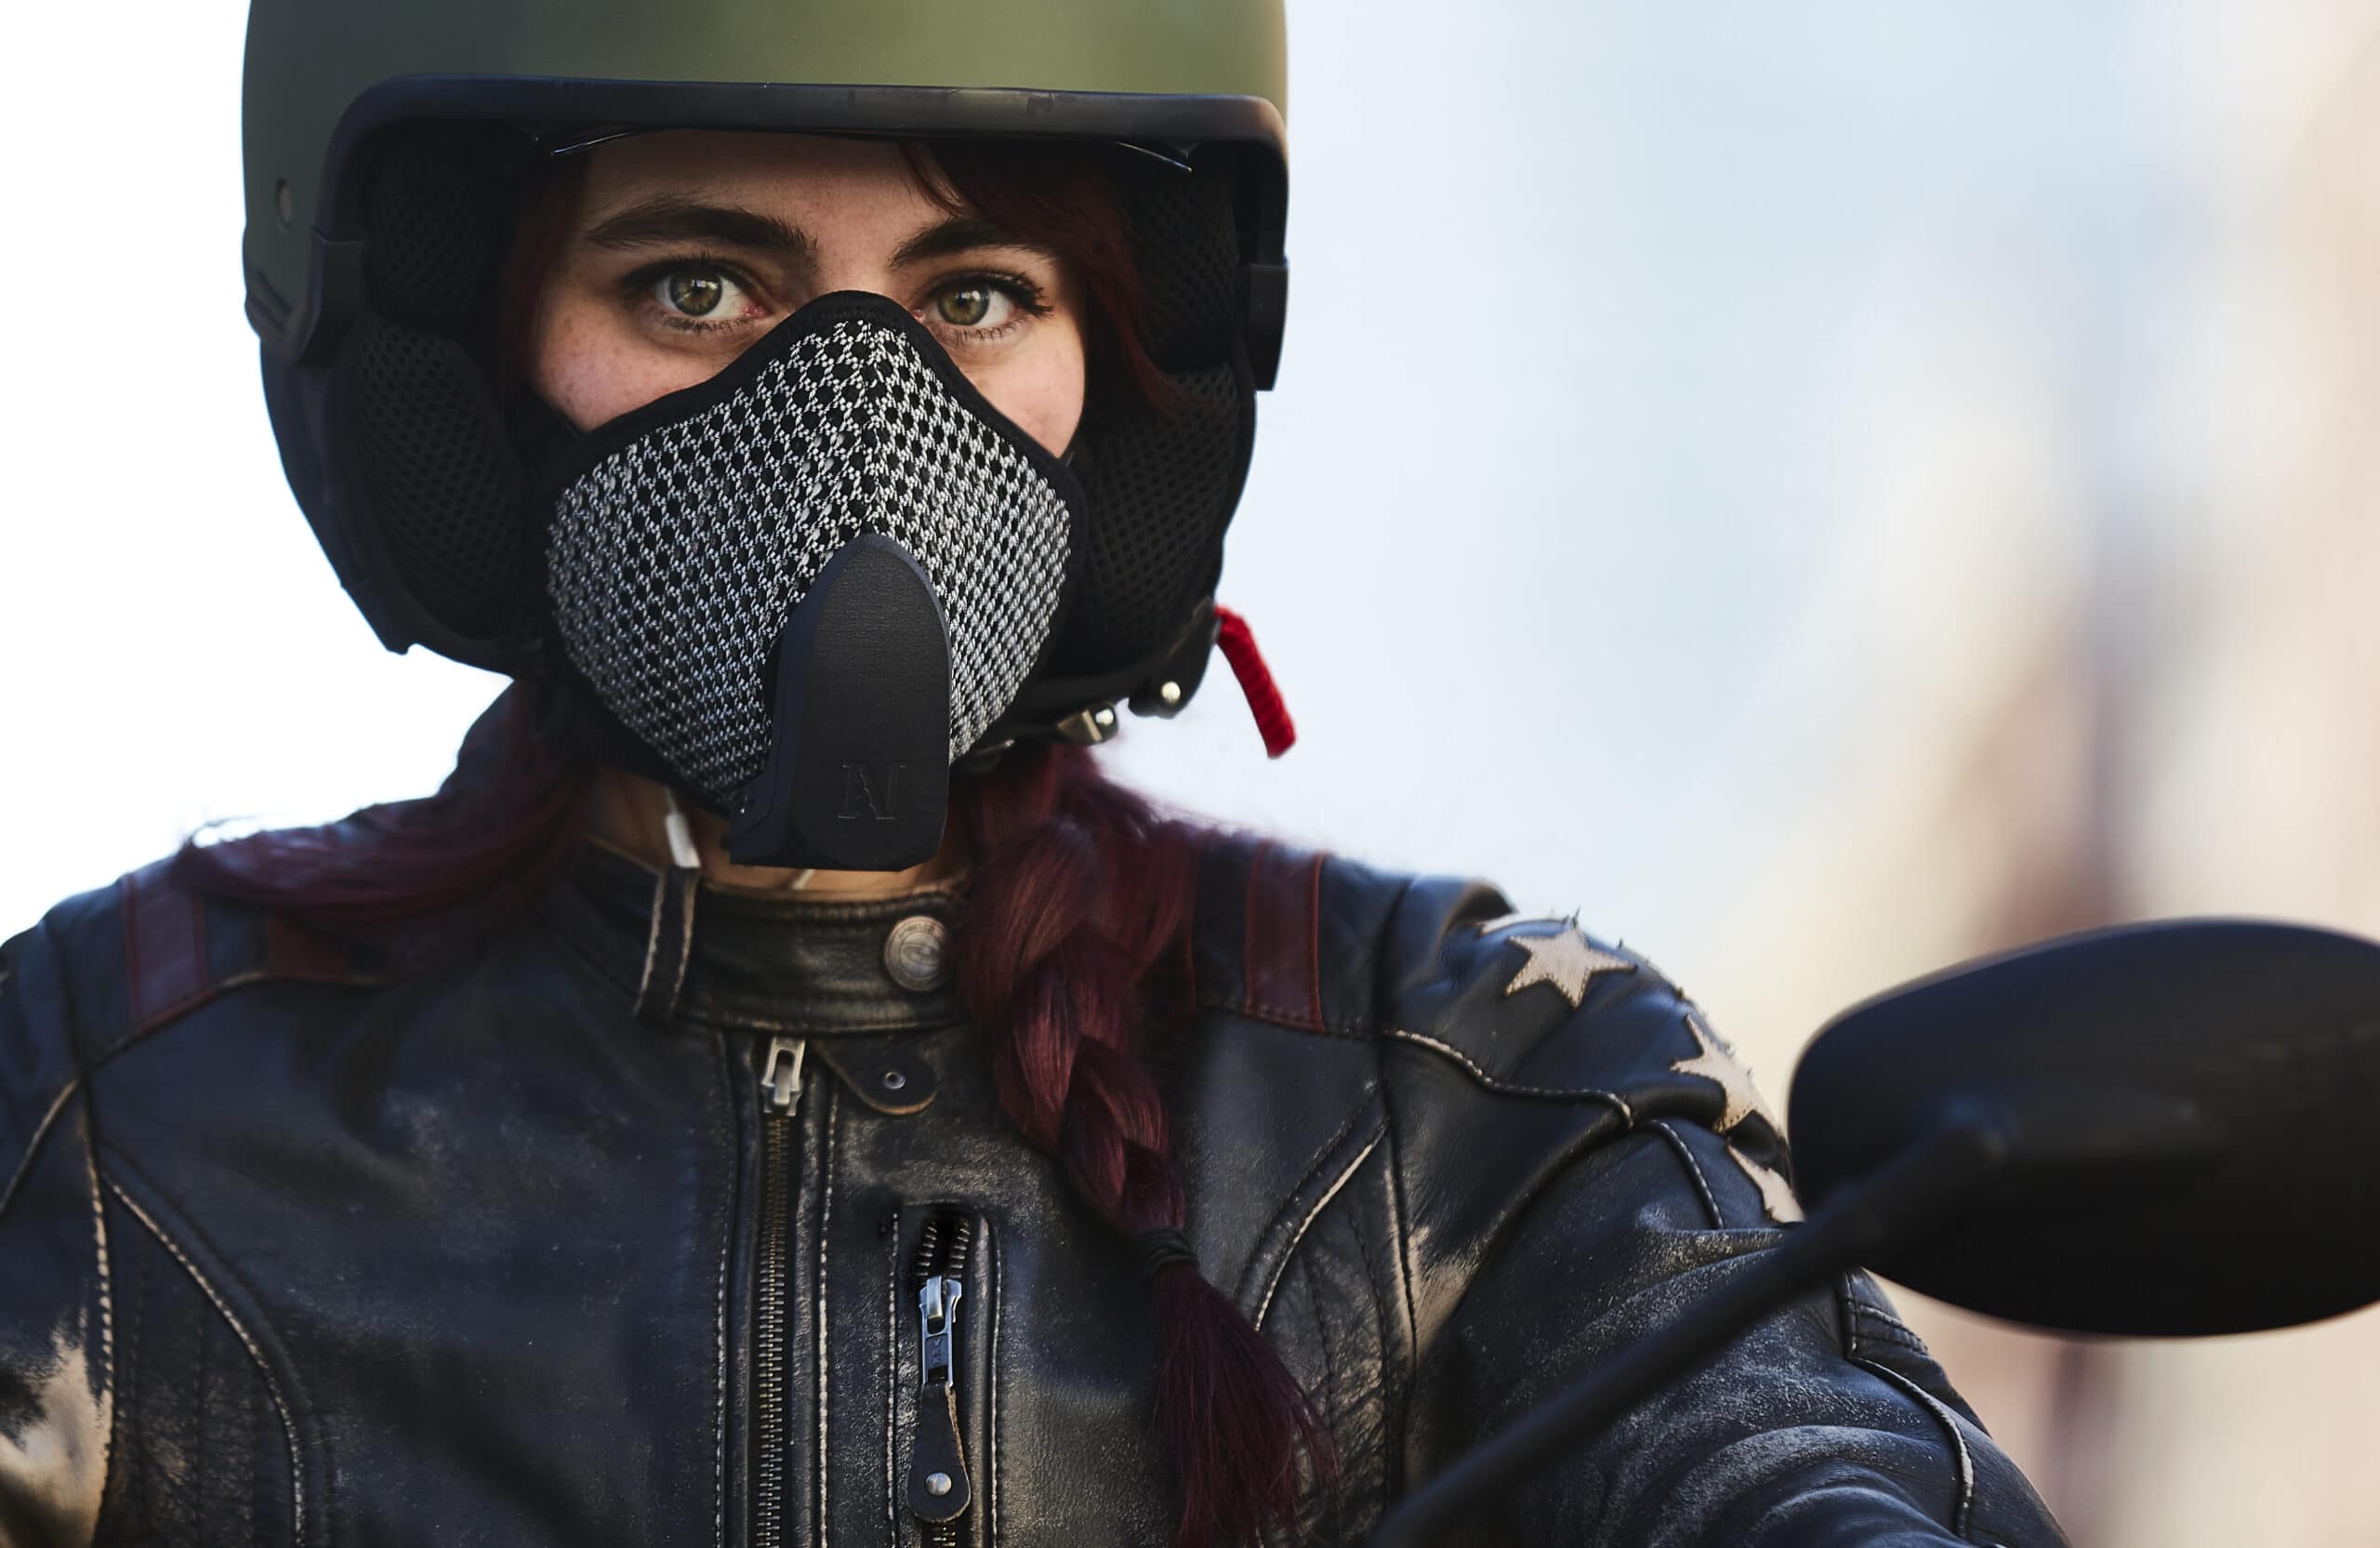 La Urban Mask di Narvalo: per proteggere i motociclisti dallo smog urbano thumbnail